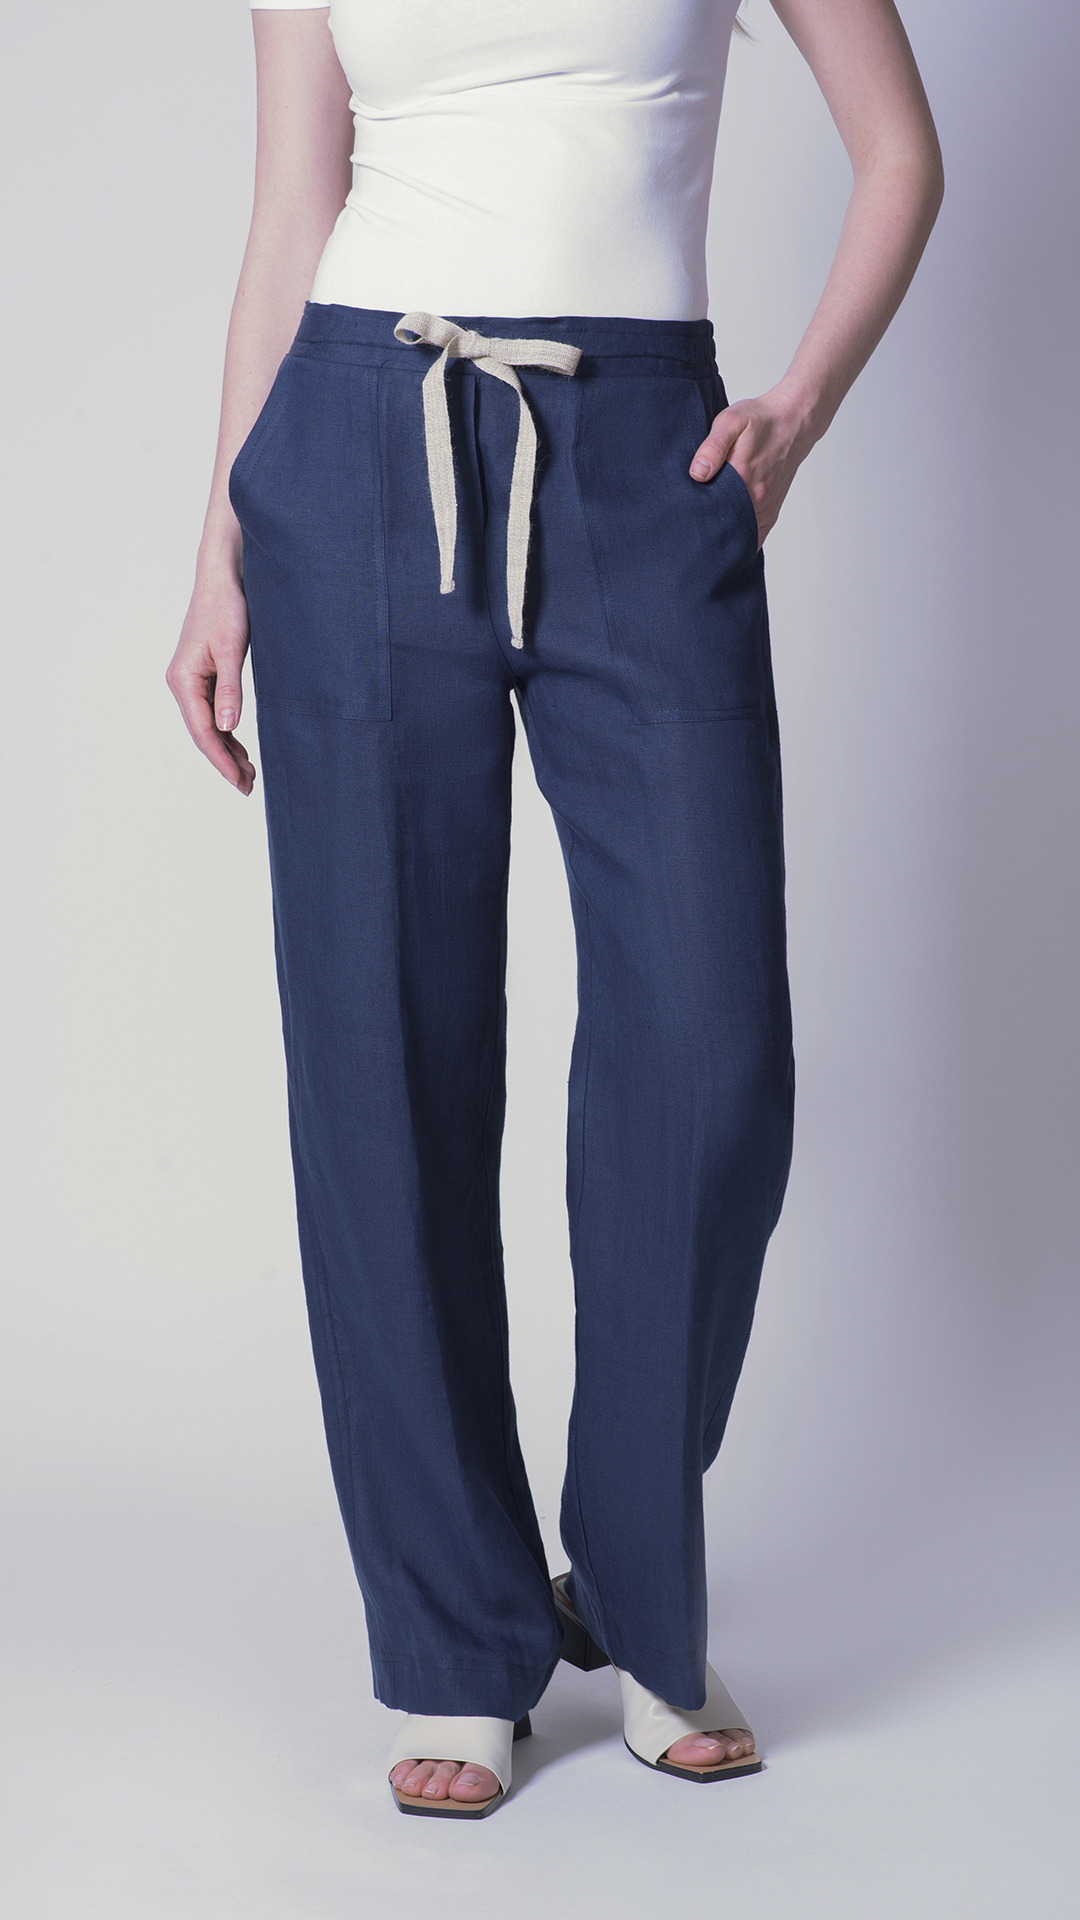 Linopants01 blu 1 1stAmerican pantalaccio da donna 100% lino Made in Italy con tasche taglio classico - pantalone con laccio in contrasto - puro lino